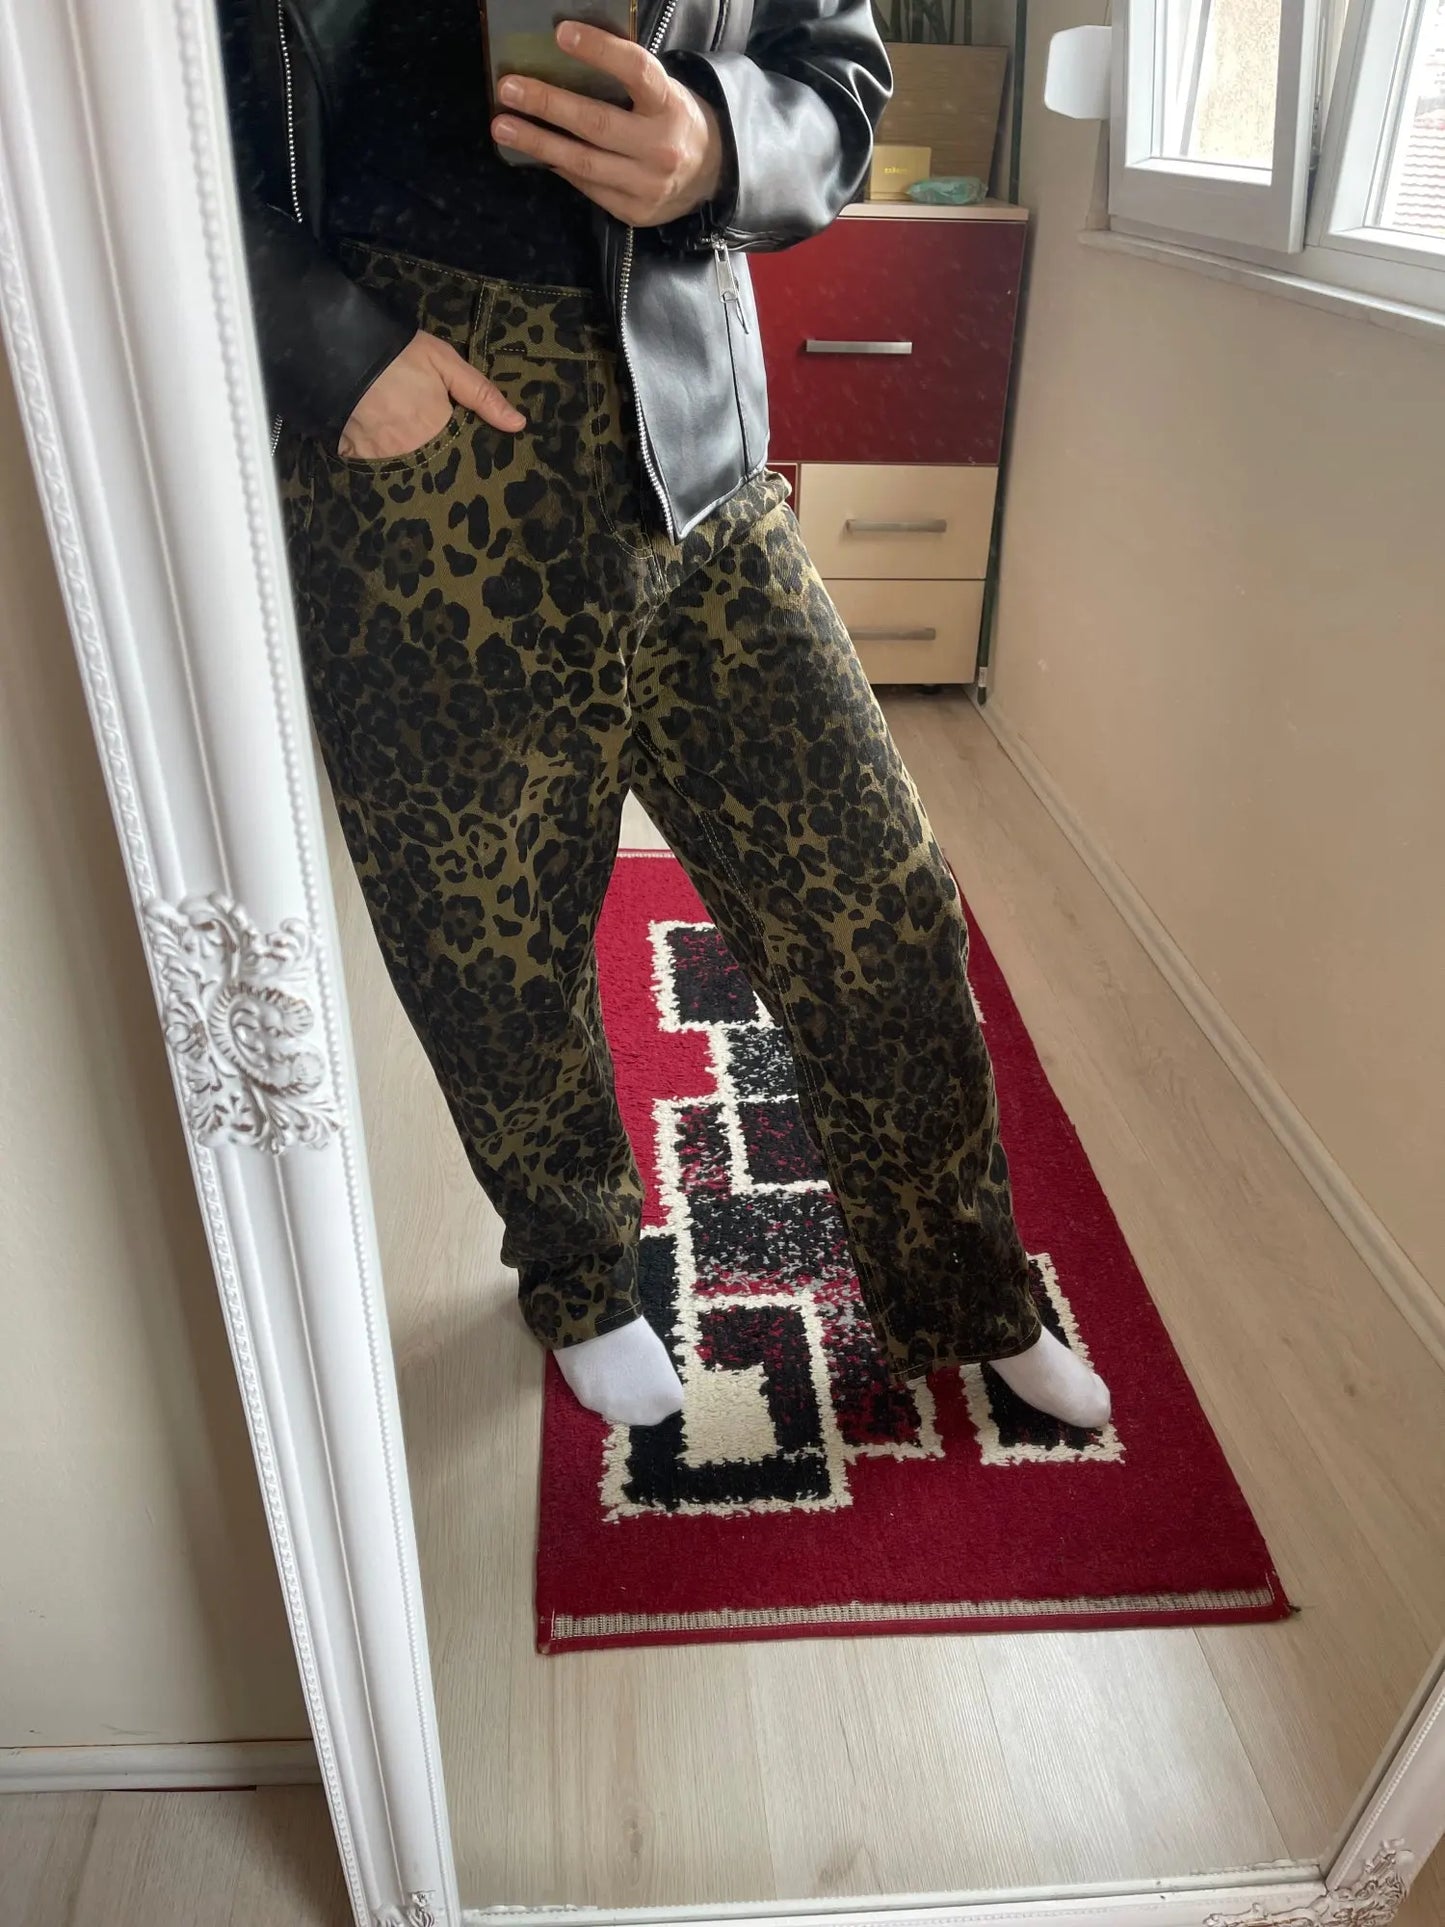 Leopard Print Jeans